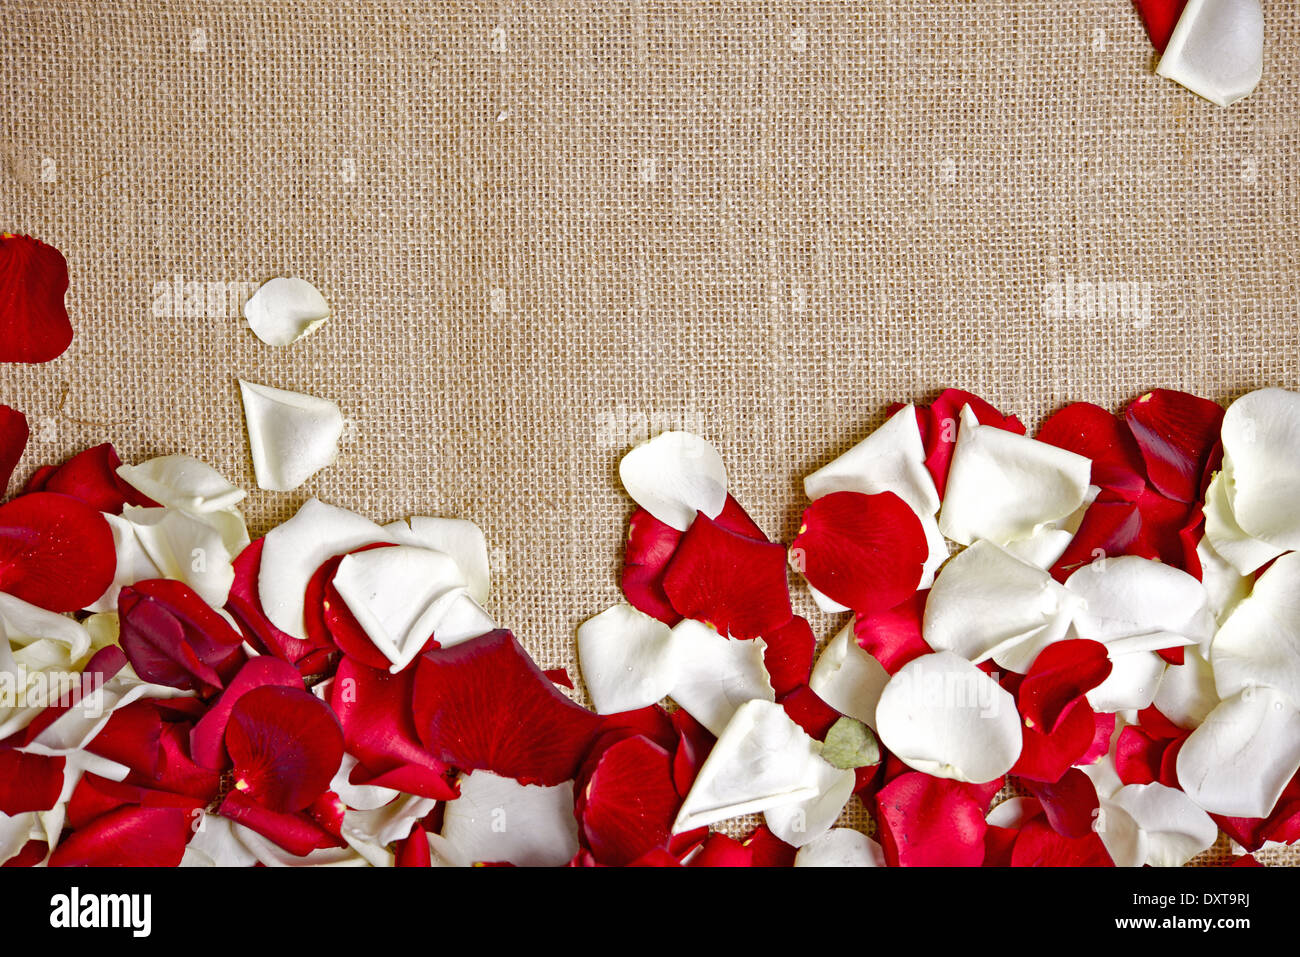 Leinwand und Rose Blumenblätter Fotohintergrund mit Textfreiraum. Stockfoto